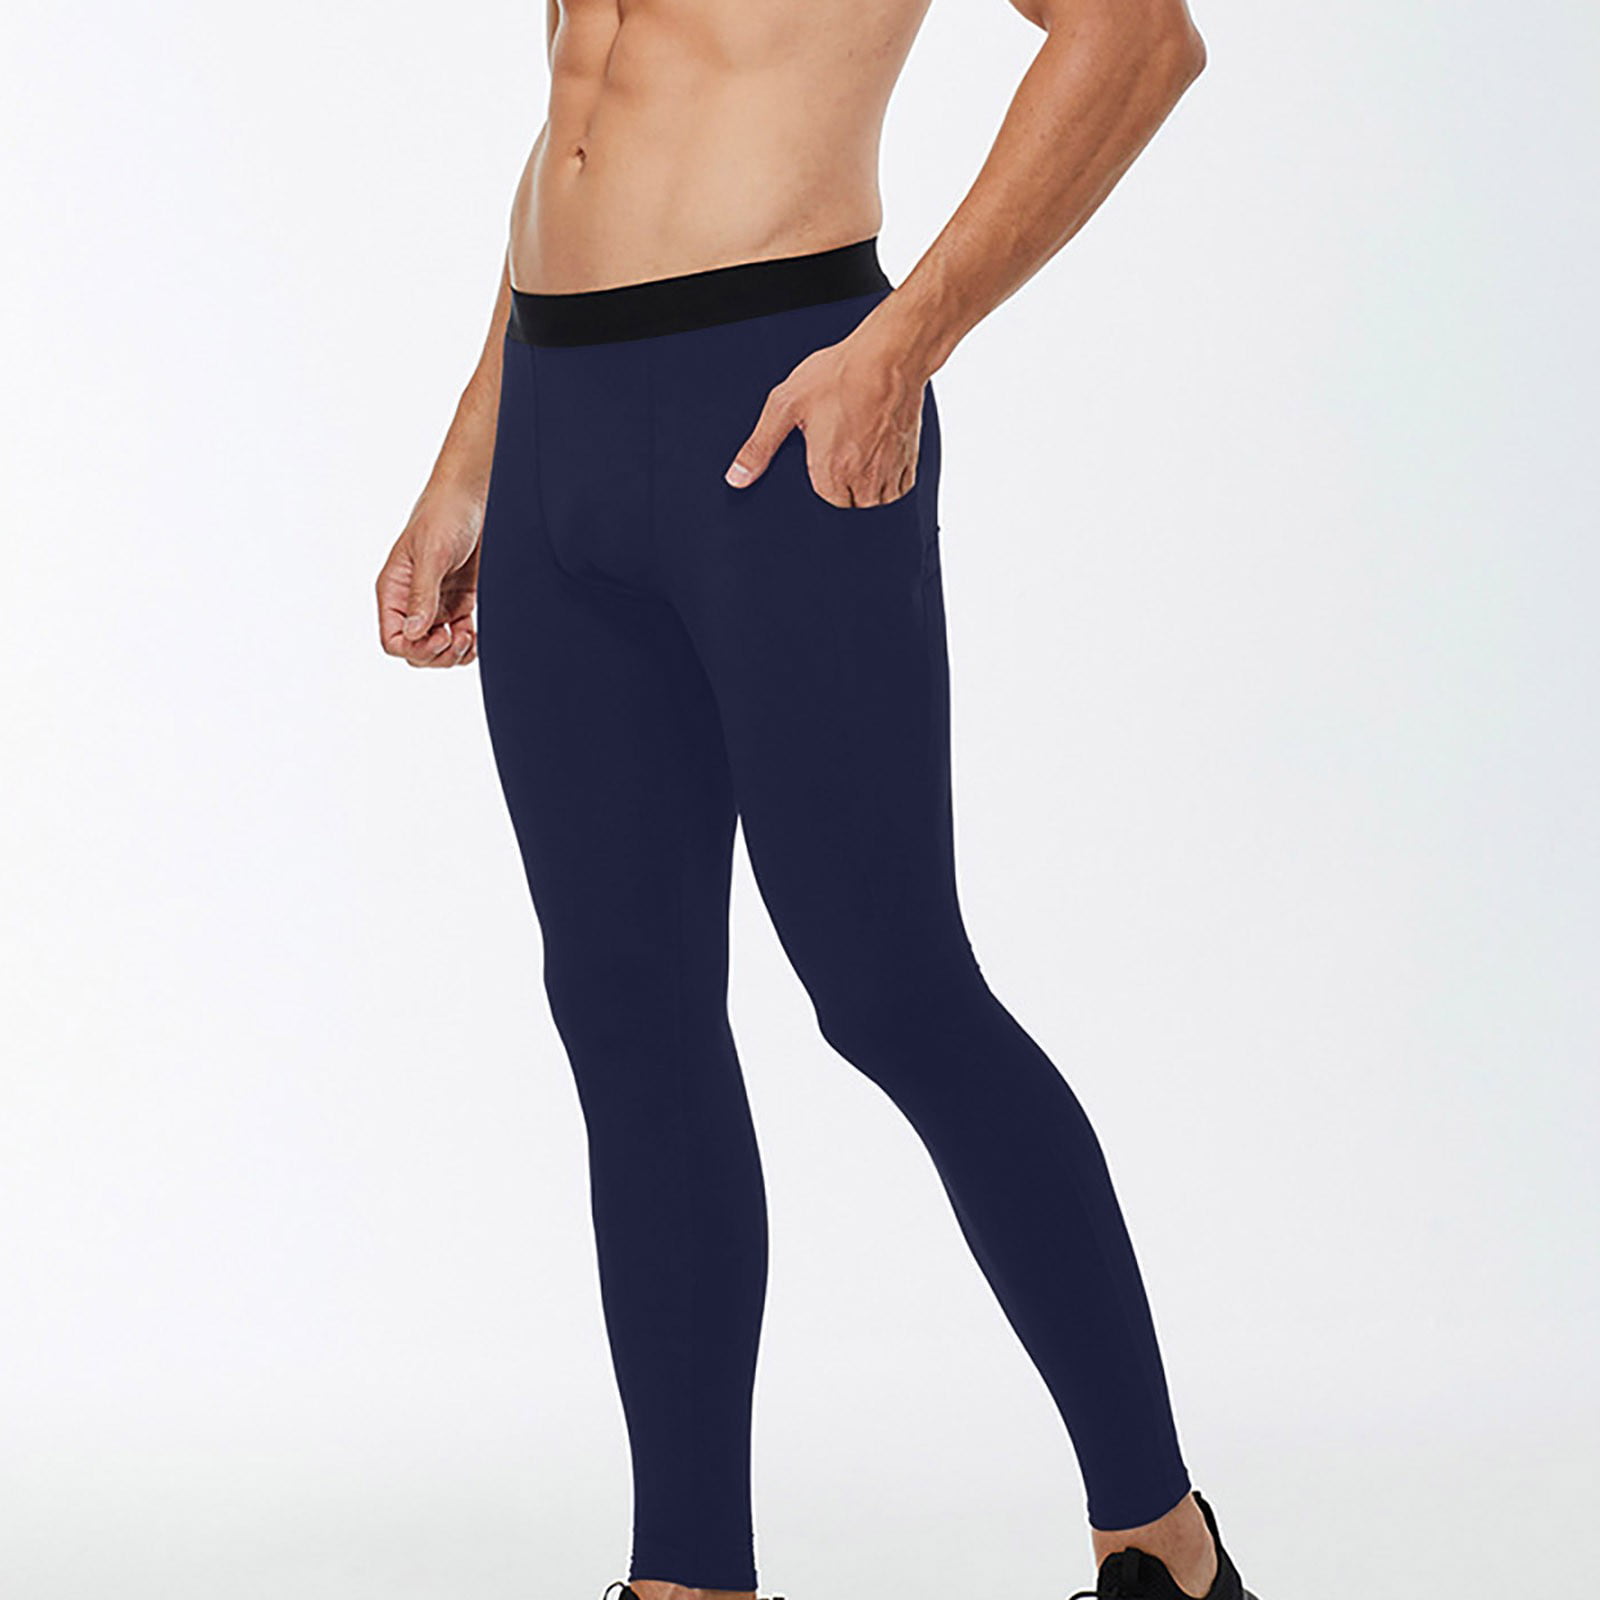 Gym leggings & bottoms - Fit Boutique